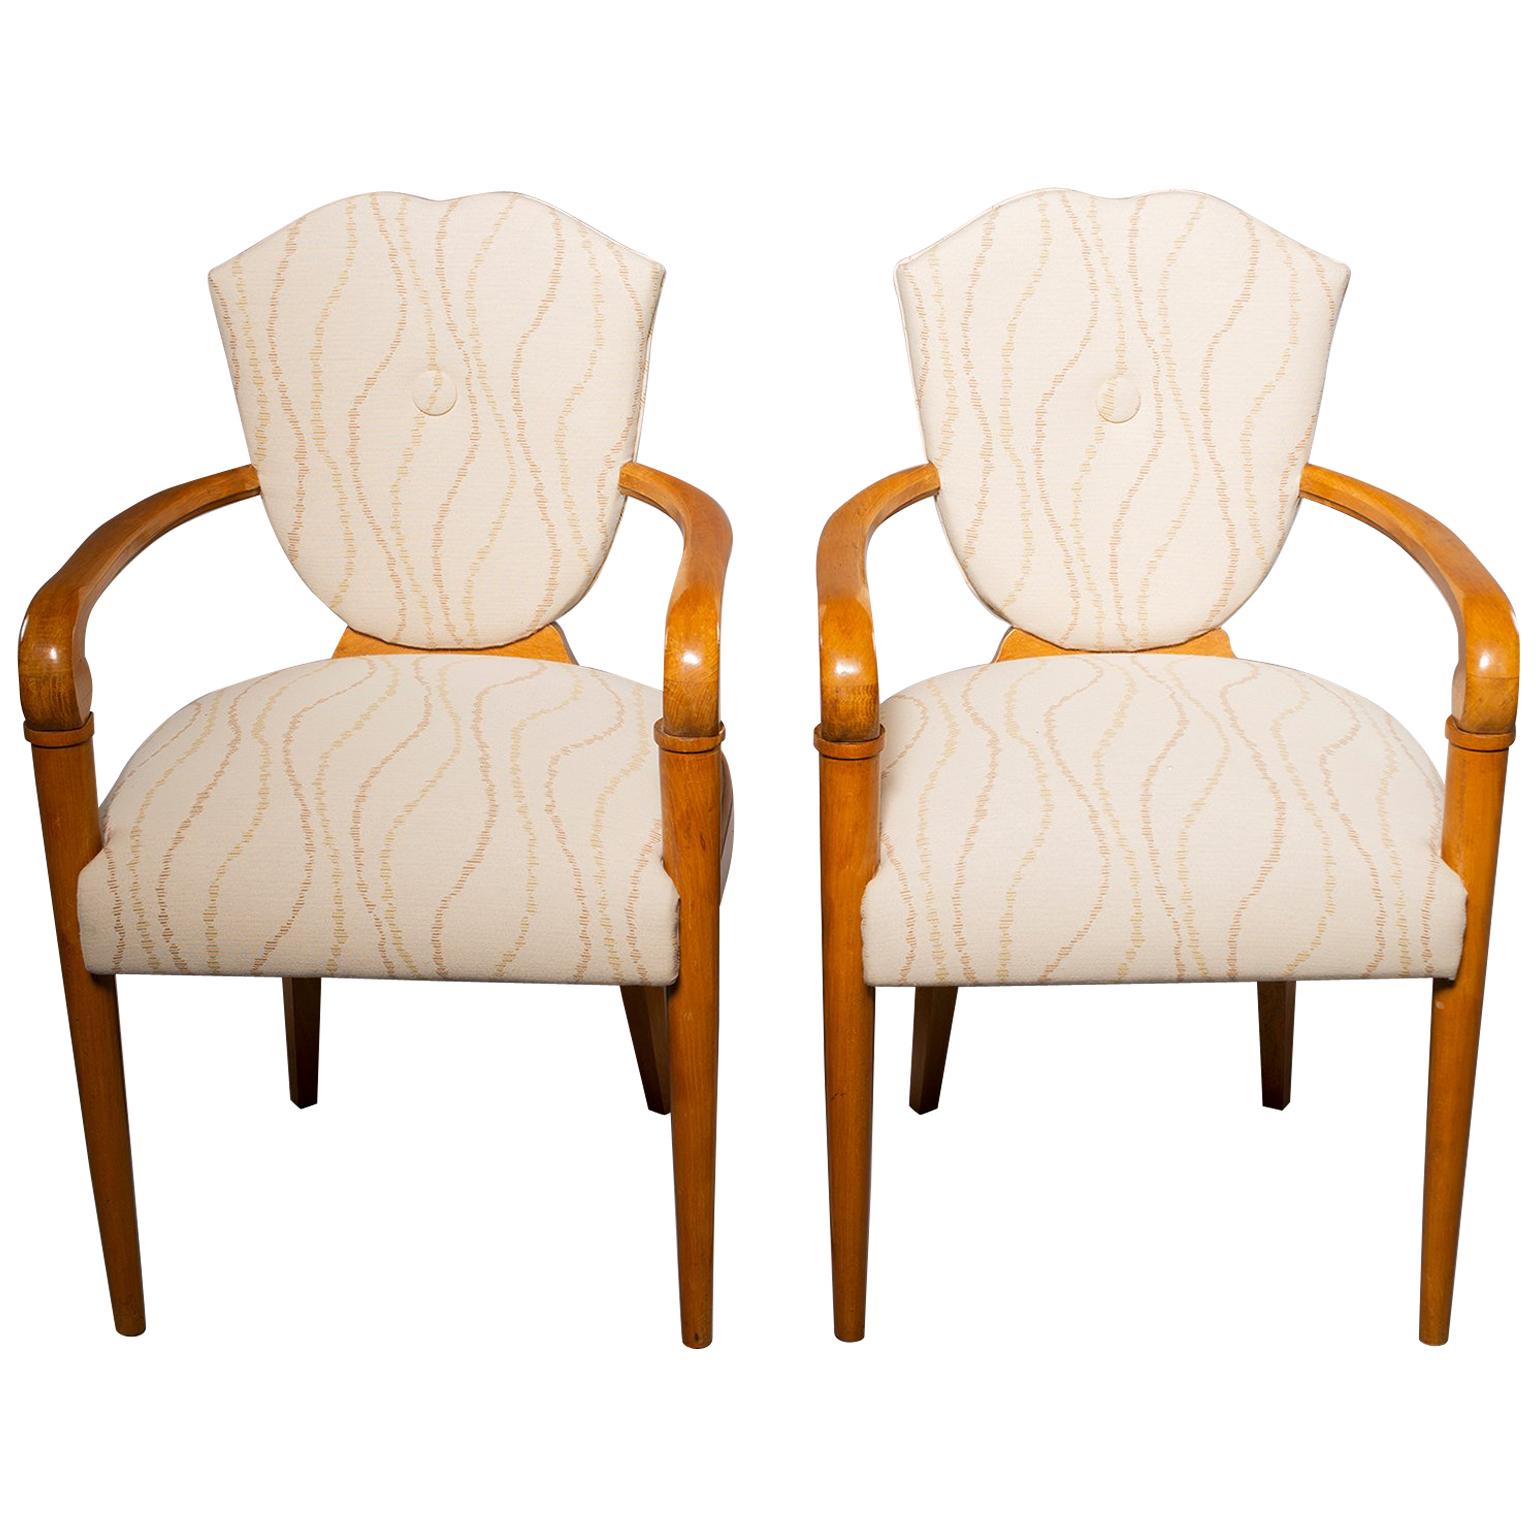 Paire de chaises Bridge françaises avec cadres en hêtre et nouveau tissu d'ameublement